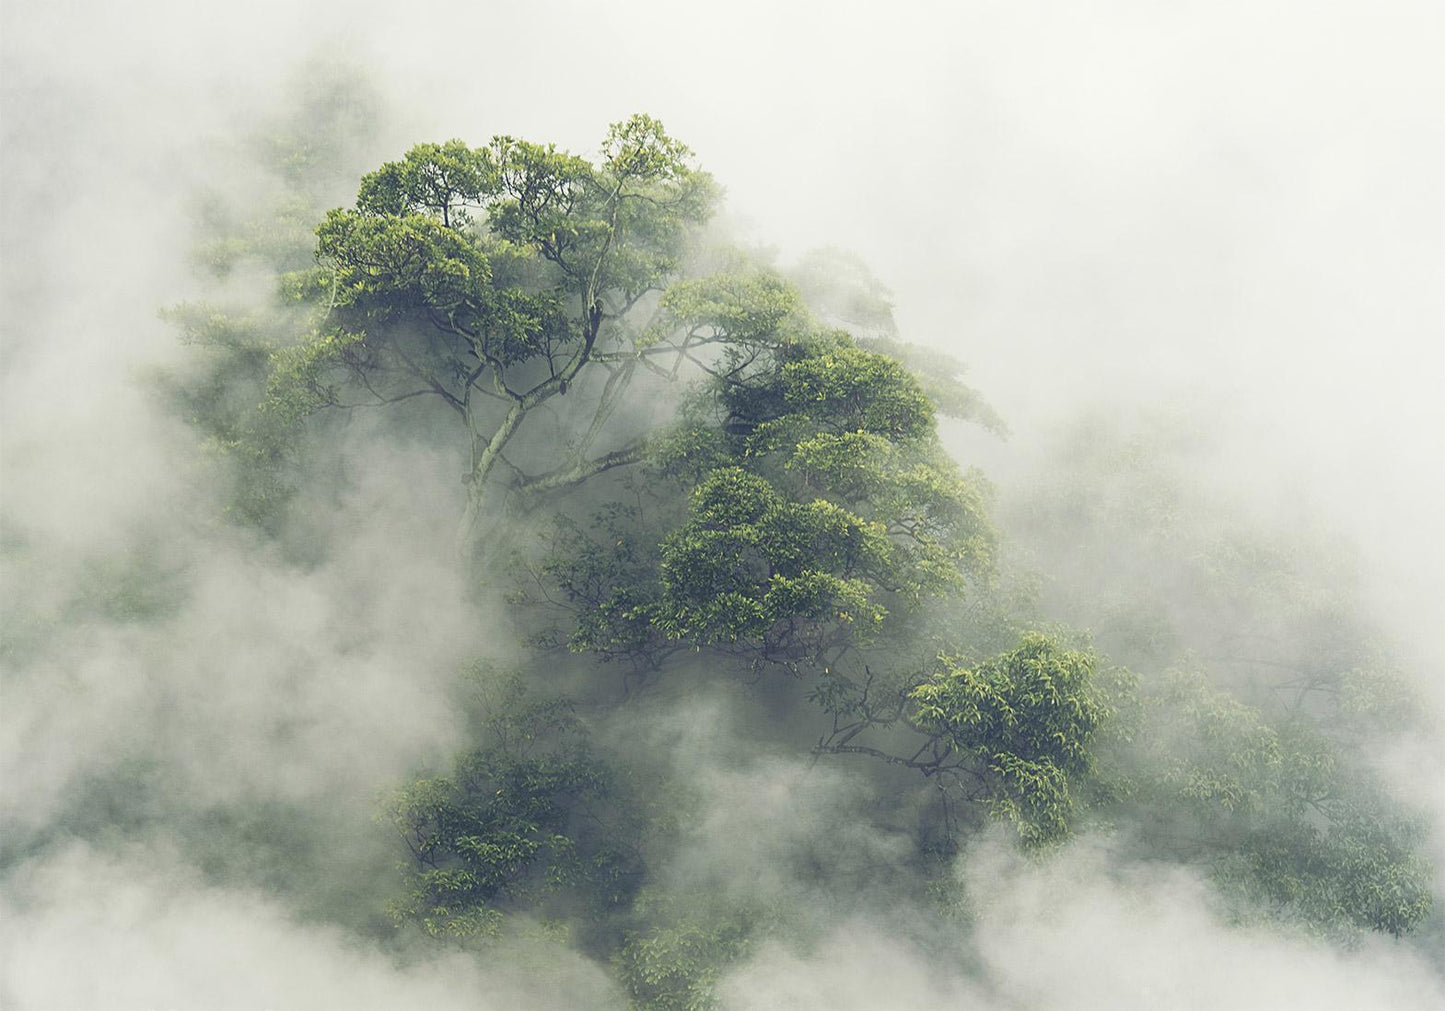 Fotobehang - Foggy Amazon